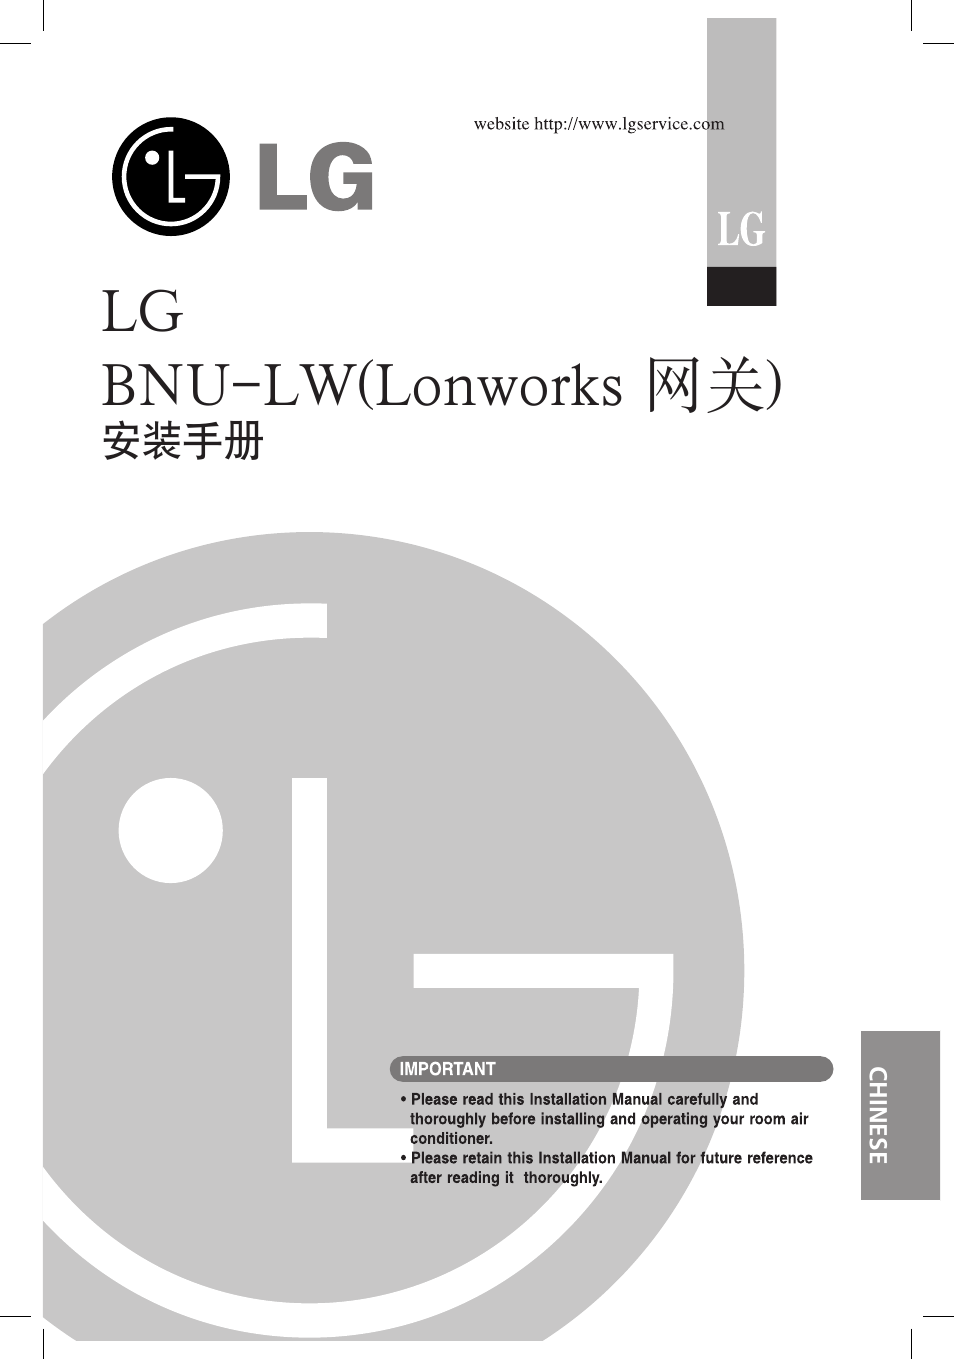 Lg bnu-lw(lonworks 网关) | LG PQNFB16A1 User Manual | Page 142 / 169